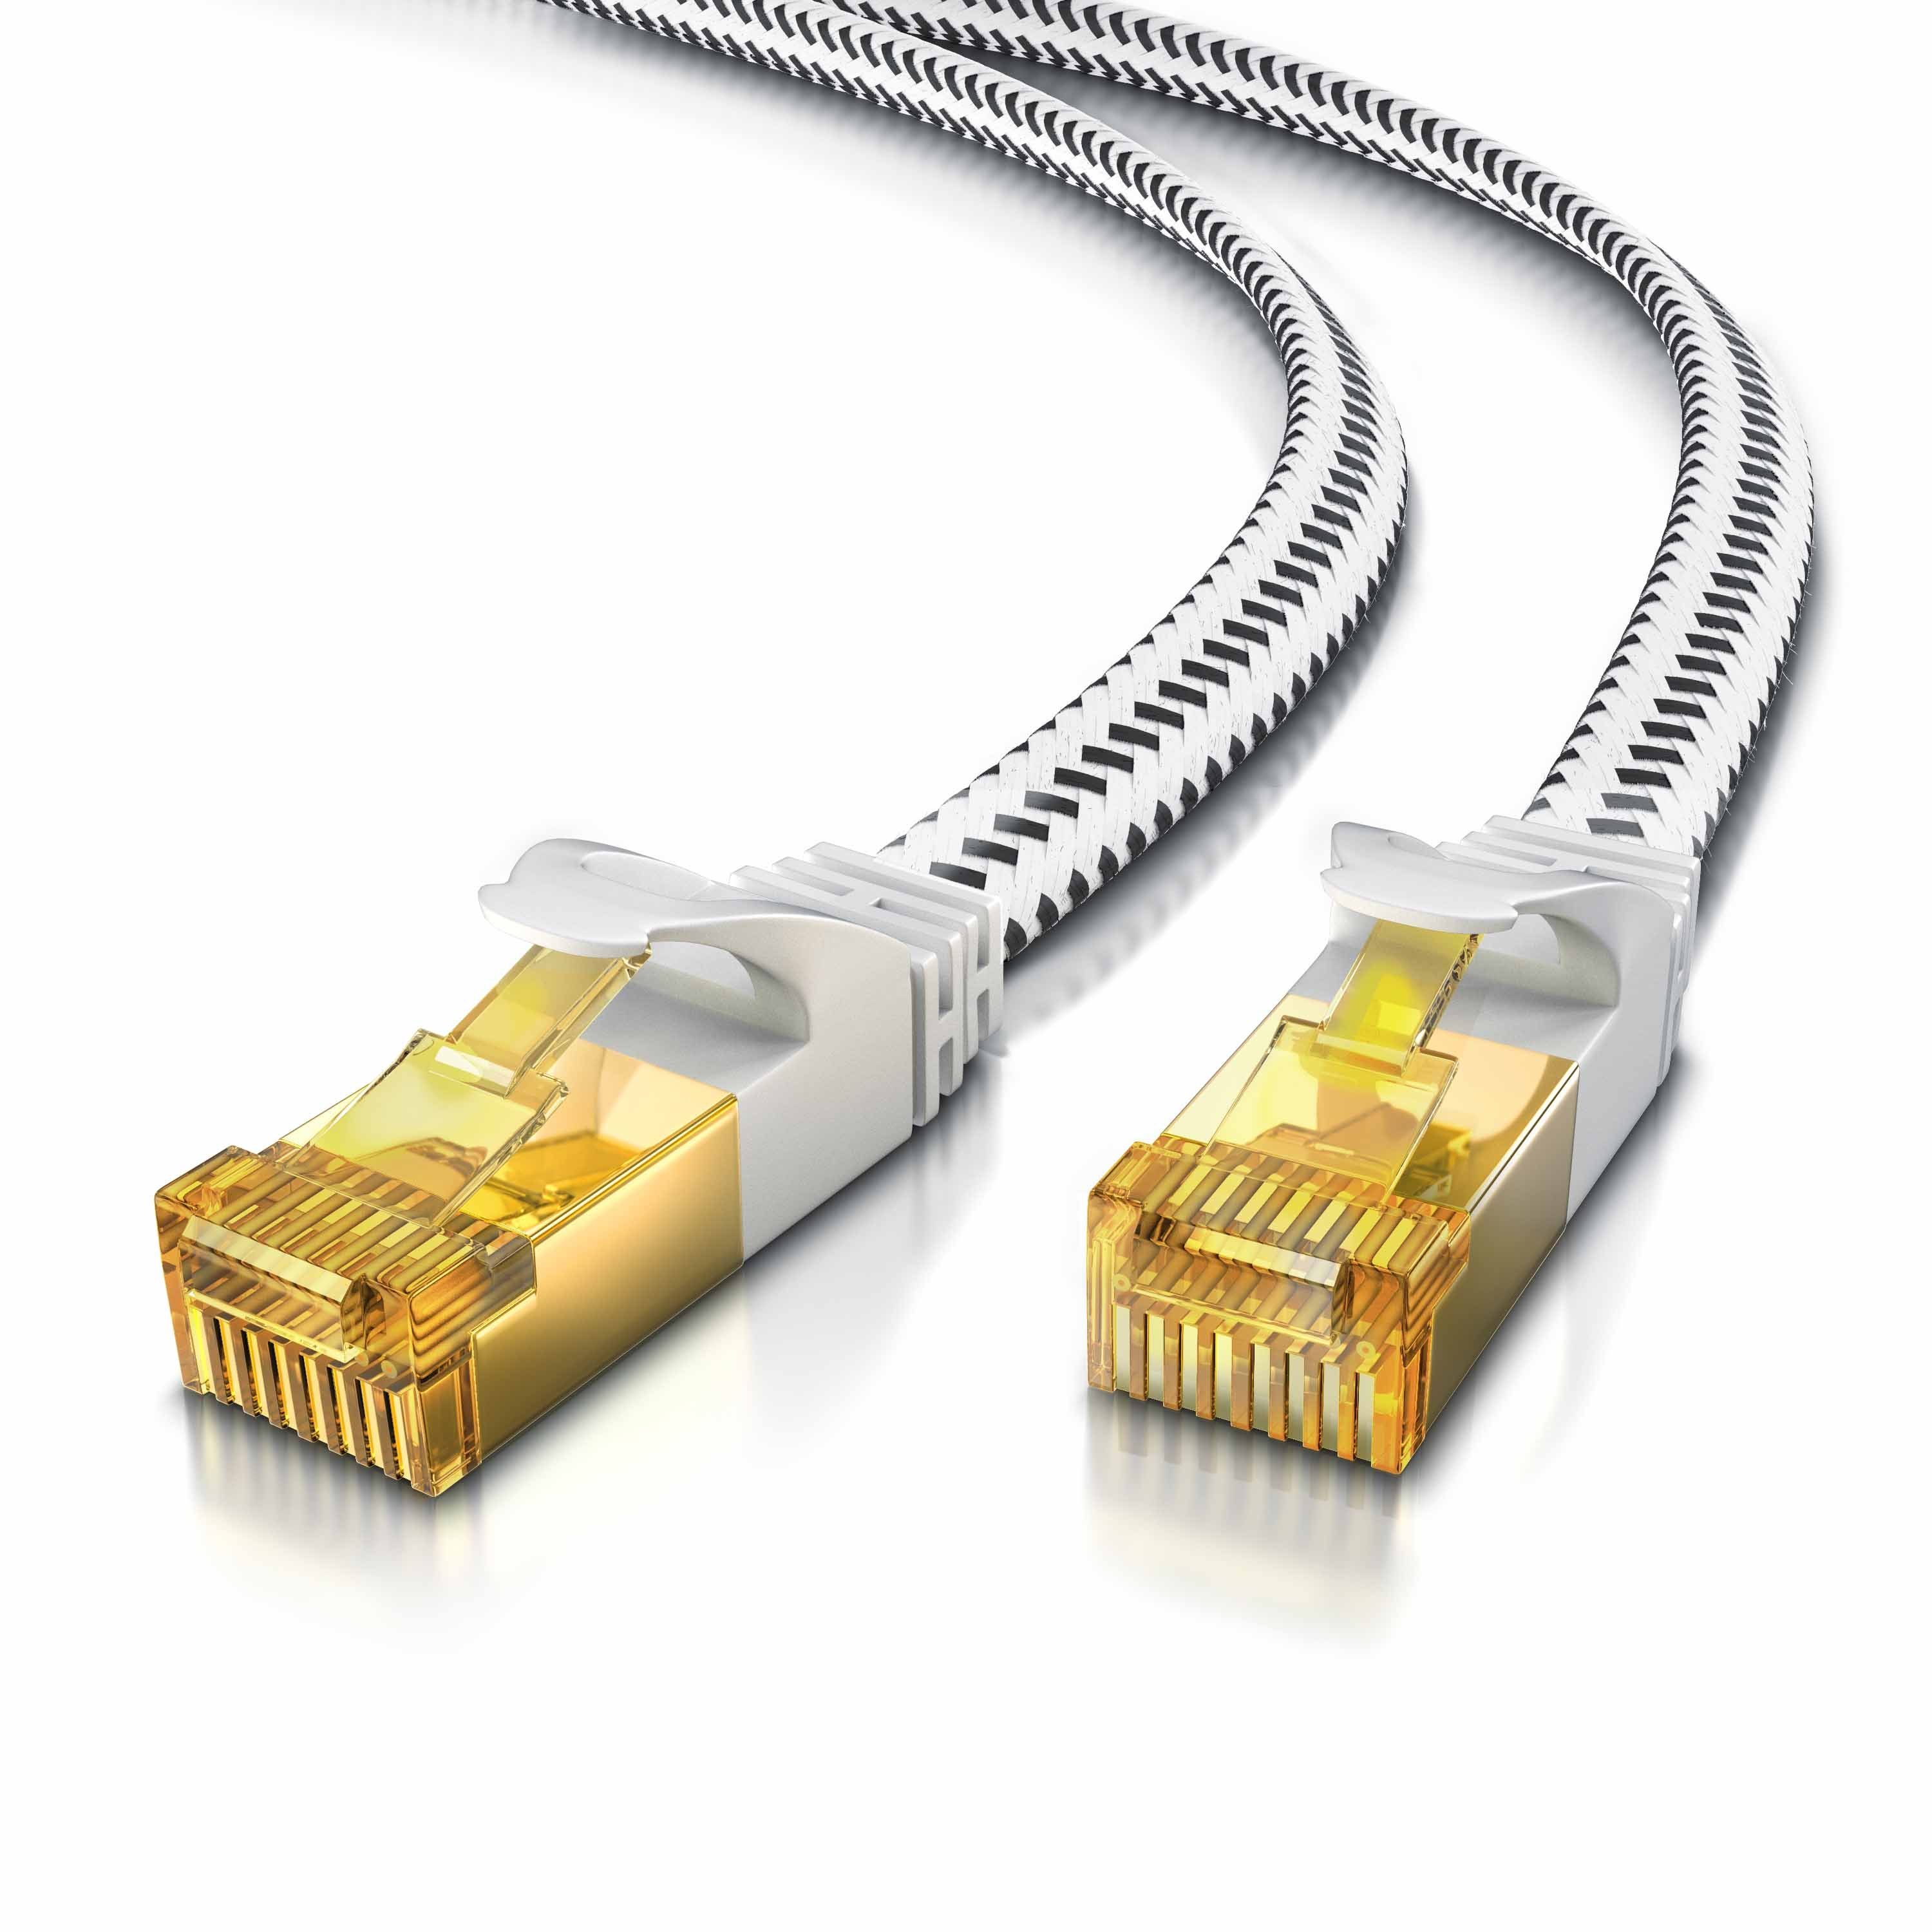 Primewire LAN-Kabel, CAT.7, RJ-45 (Ethernet) (3000 cm), Patchkabel flach CAT 7, Baumwollmantel, Flachband Netzwerkkabel - 30m